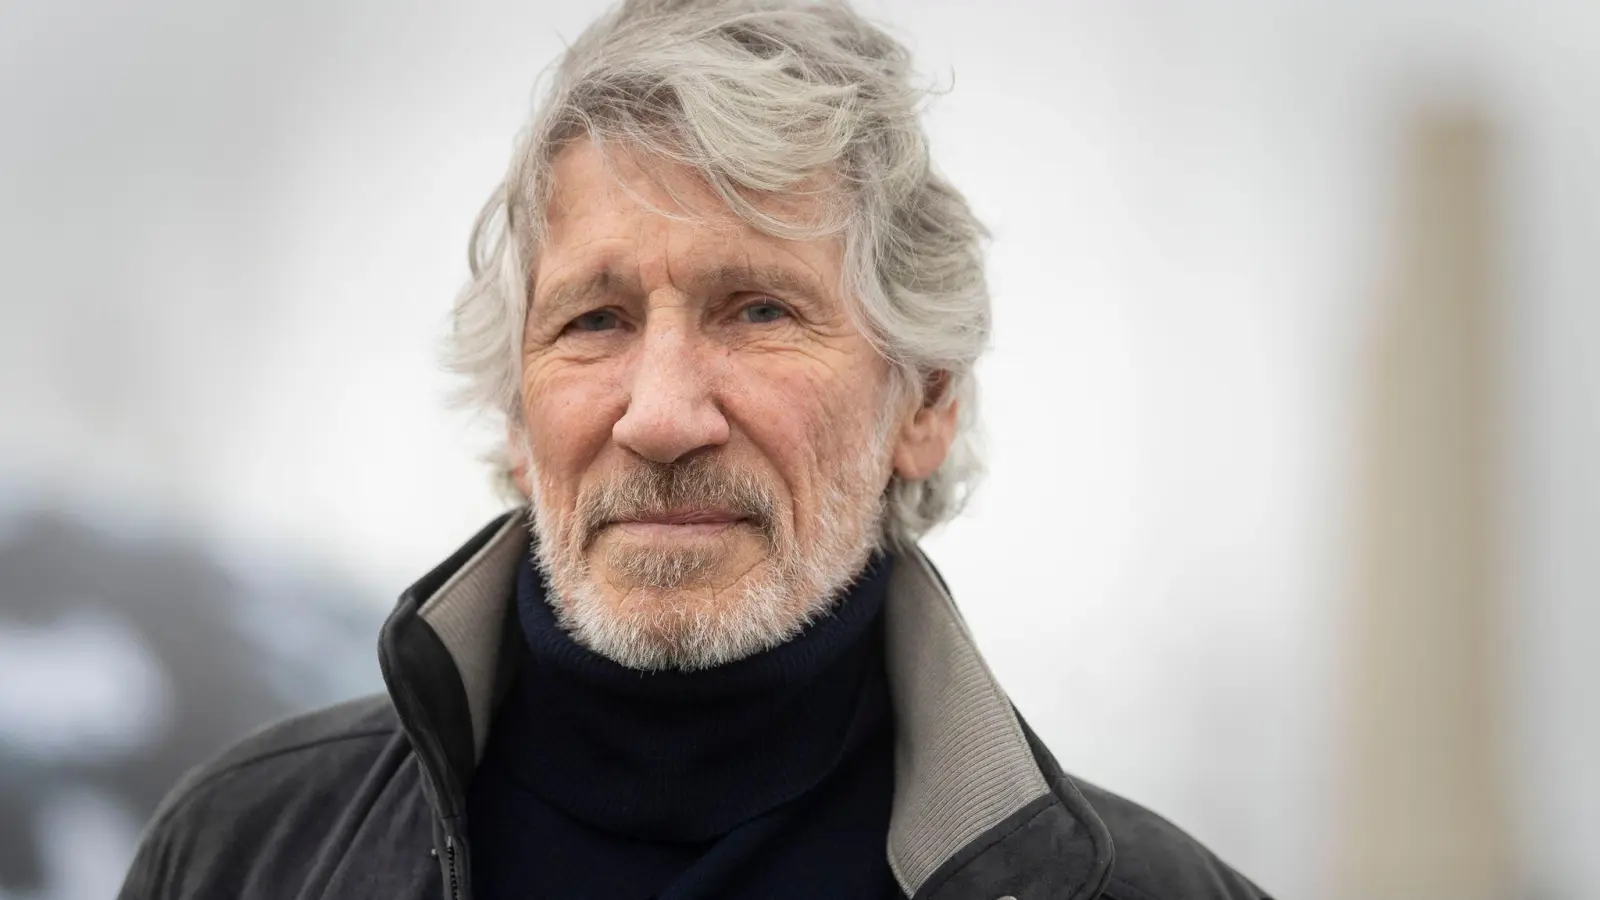 Roger Waters, Mitbegründer und Bassist von Pink Floyd, ist wegen israelkritischer Äußerungen und Aktionen in die Kritik geraten. (Foto: Victoria Jones/PA Wire/dpa)